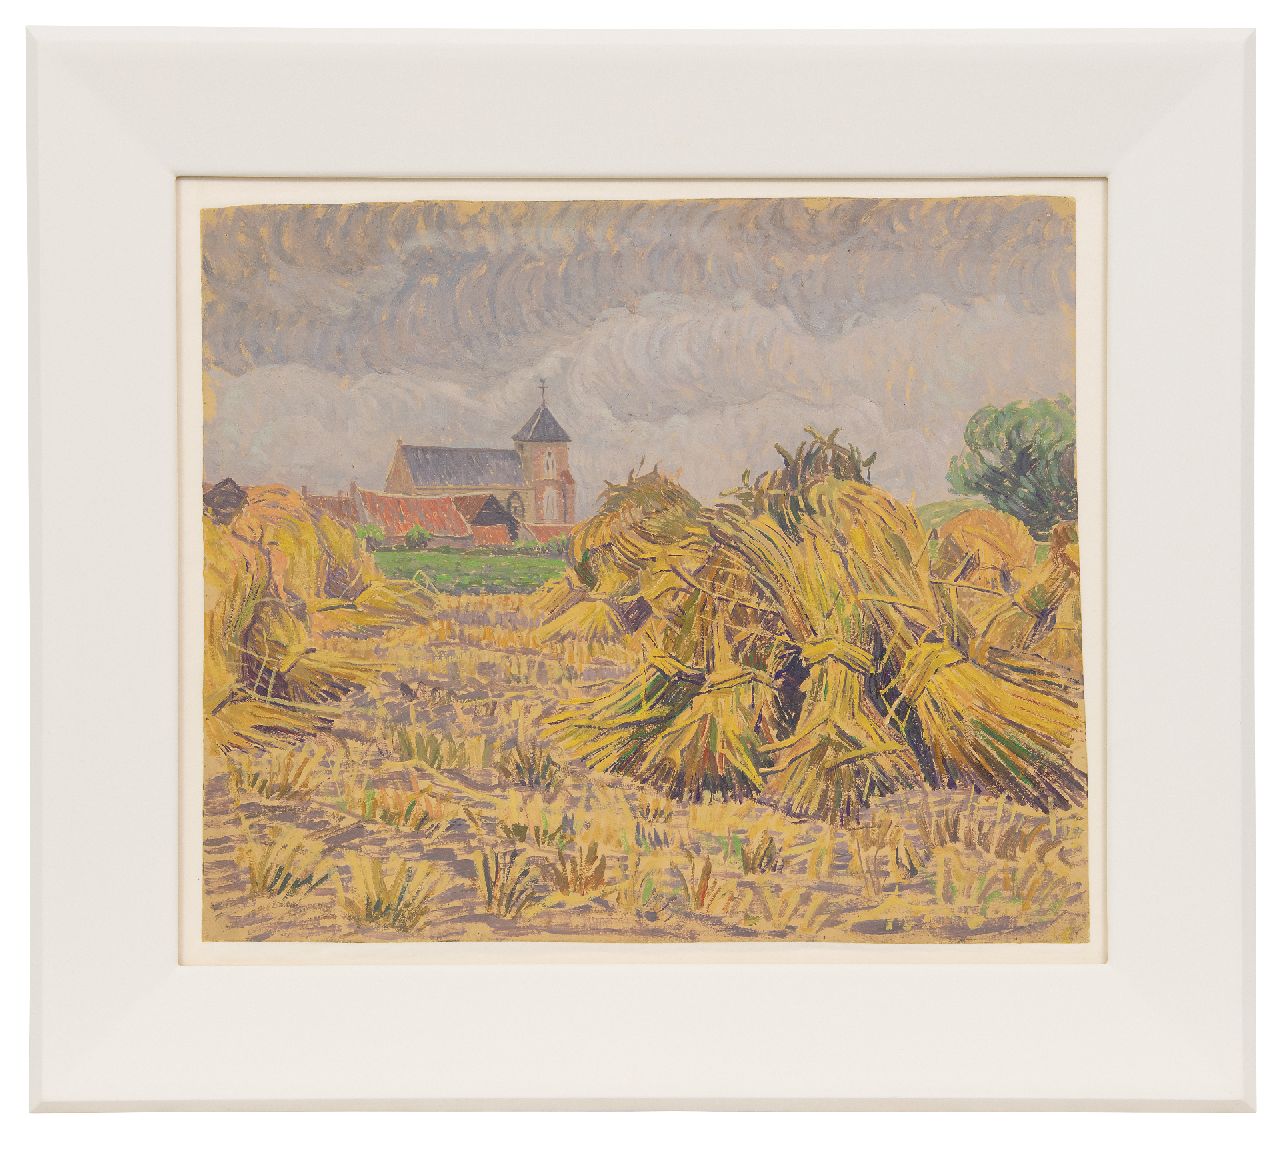 Pijpers E.E.  | 'Edith' Elizabeth Pijpers | Schilderijen te koop aangeboden | Dorpskerkje tussen veld met korenschoven, olieverf op papier 38,1 x 48,5 cm